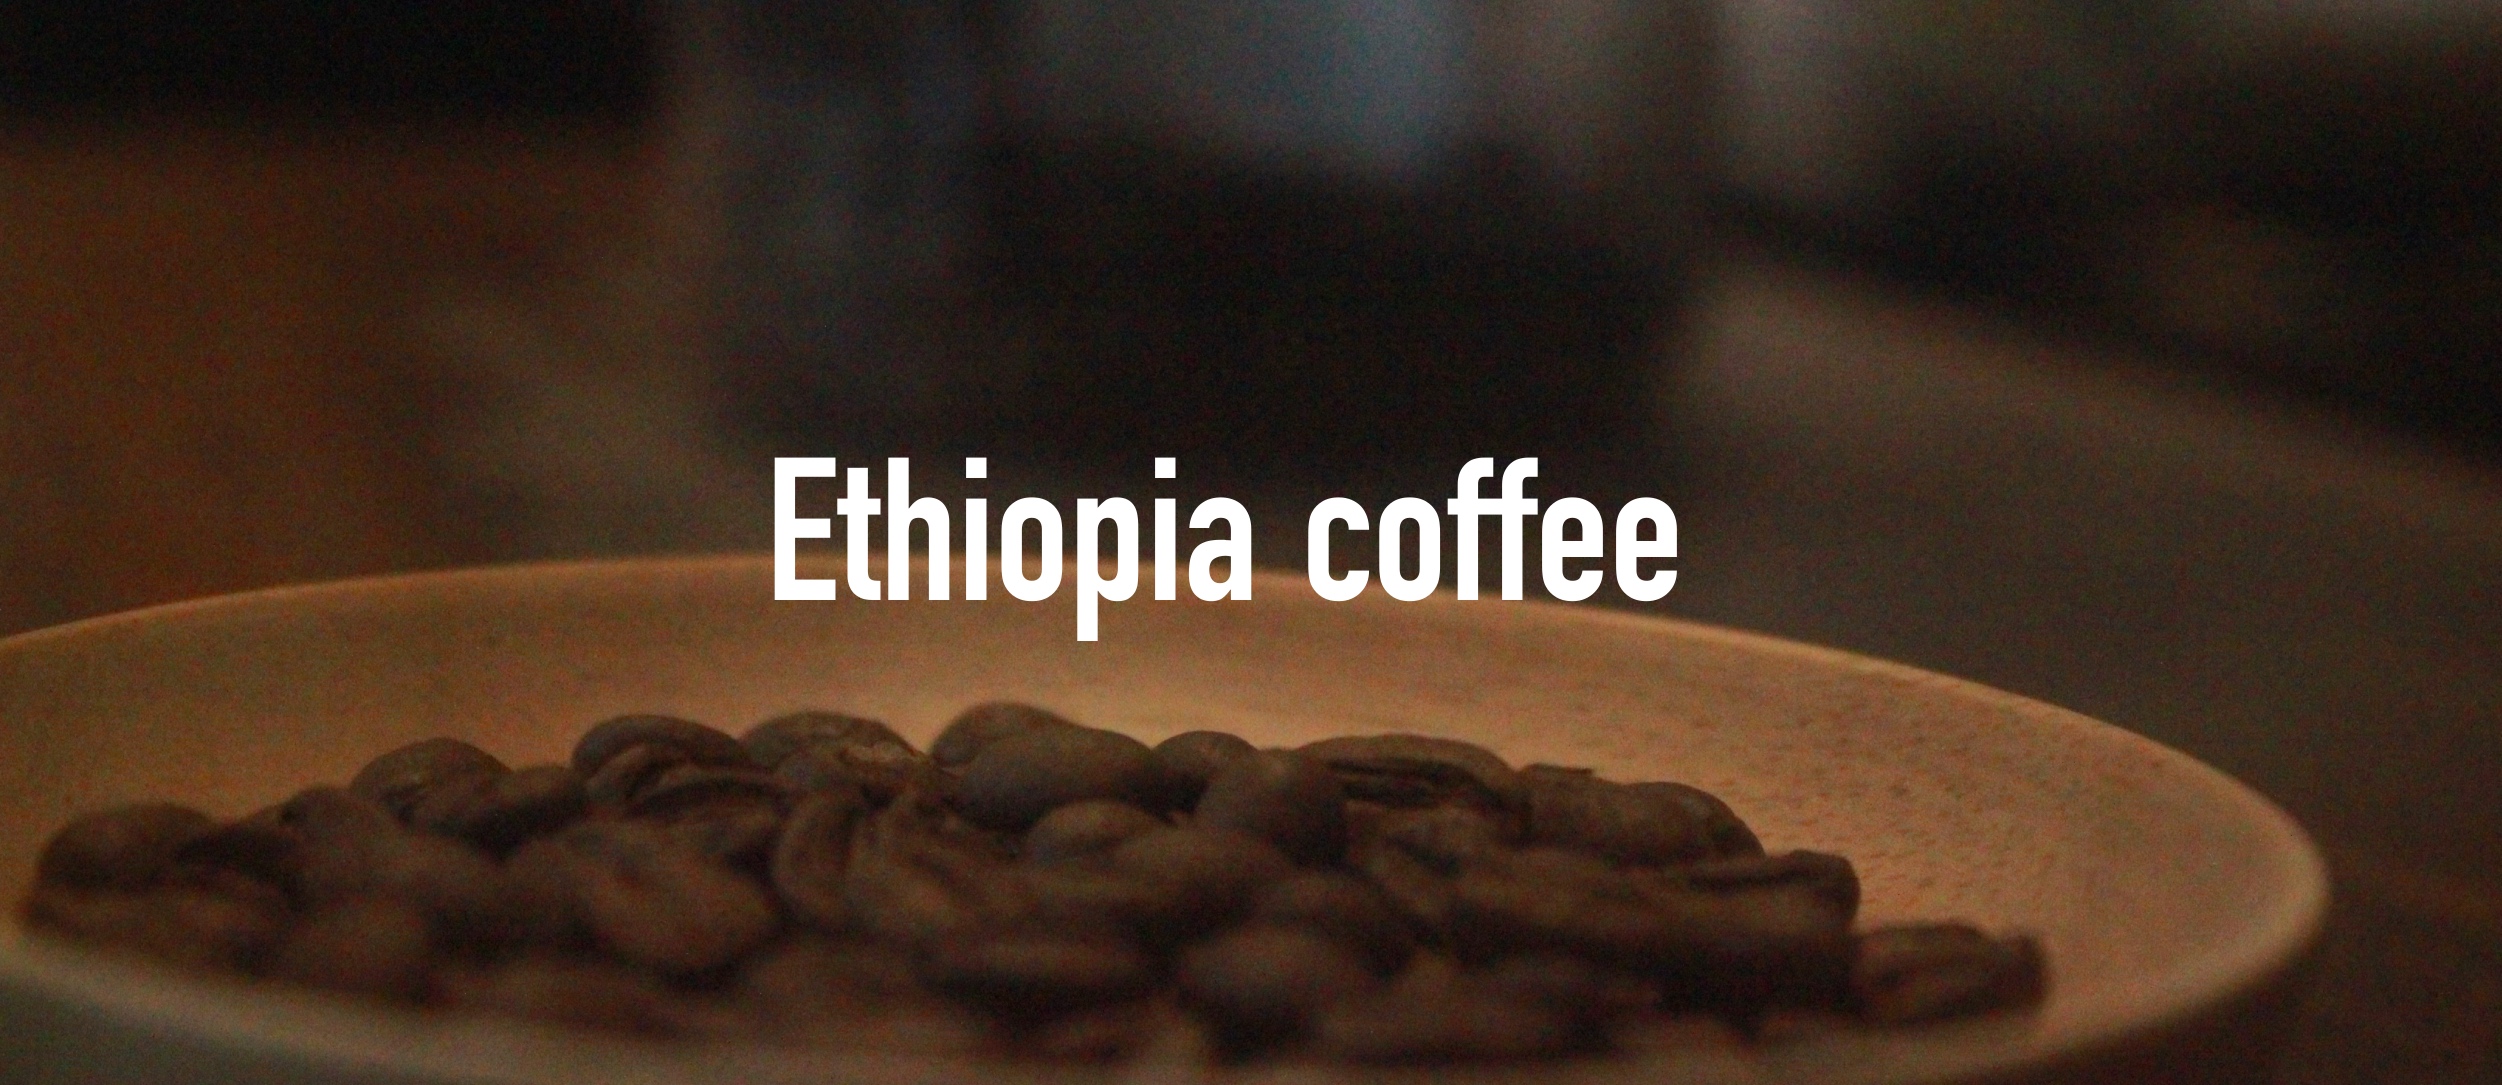 埃塞俄比亚咖啡豆为什么大小不一 埃塞俄比亚咖啡品种介绍  埃塞